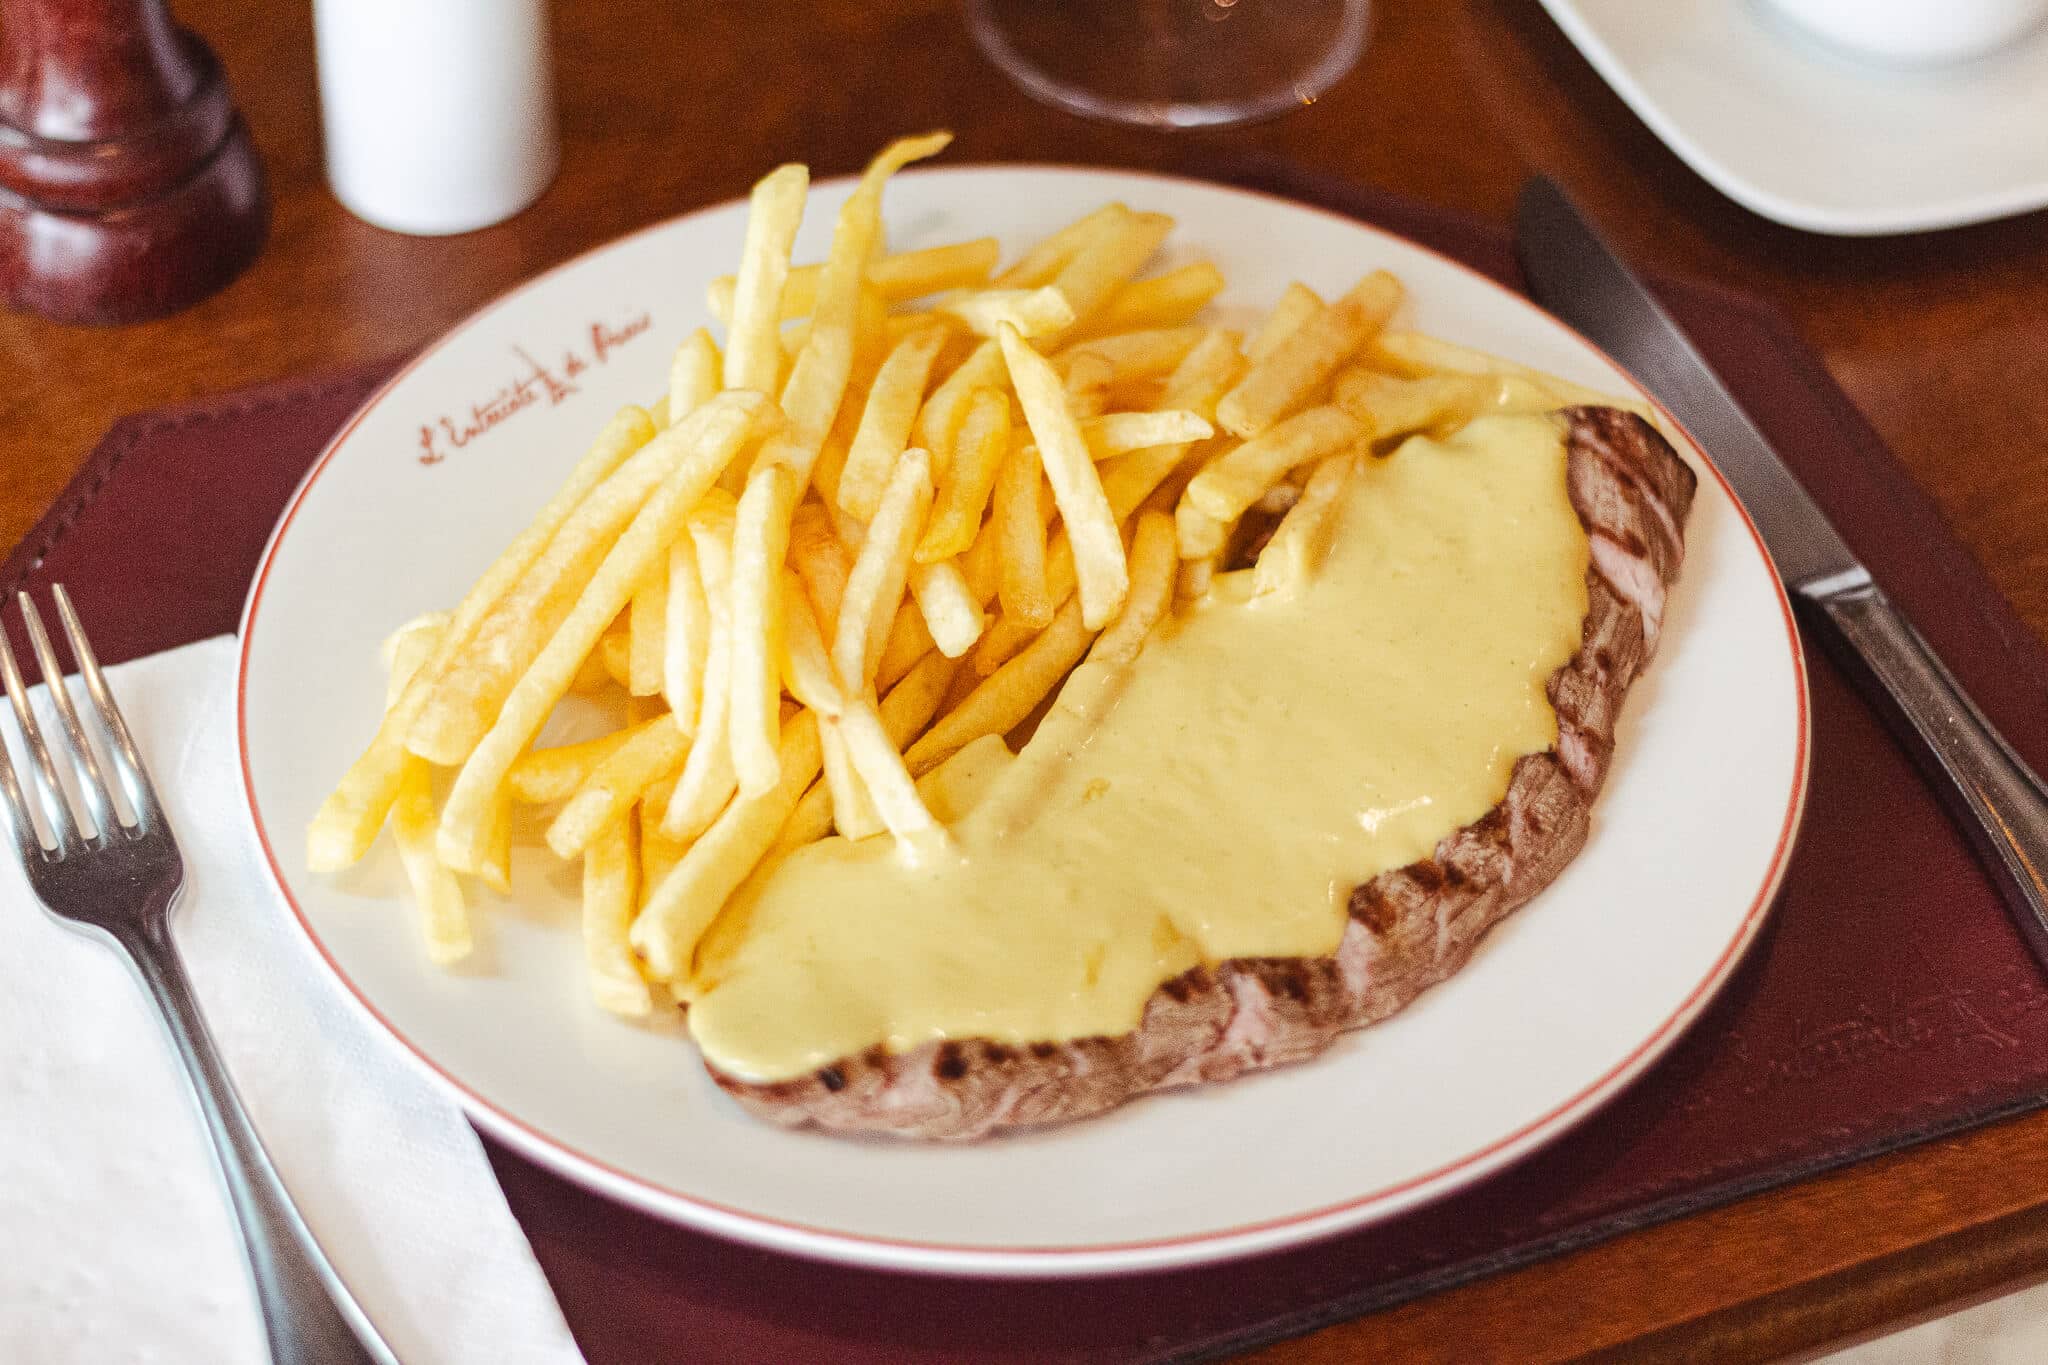 foto mostra o prato com entrecote e batata frita com um molho secreto amarelo por cima da carne